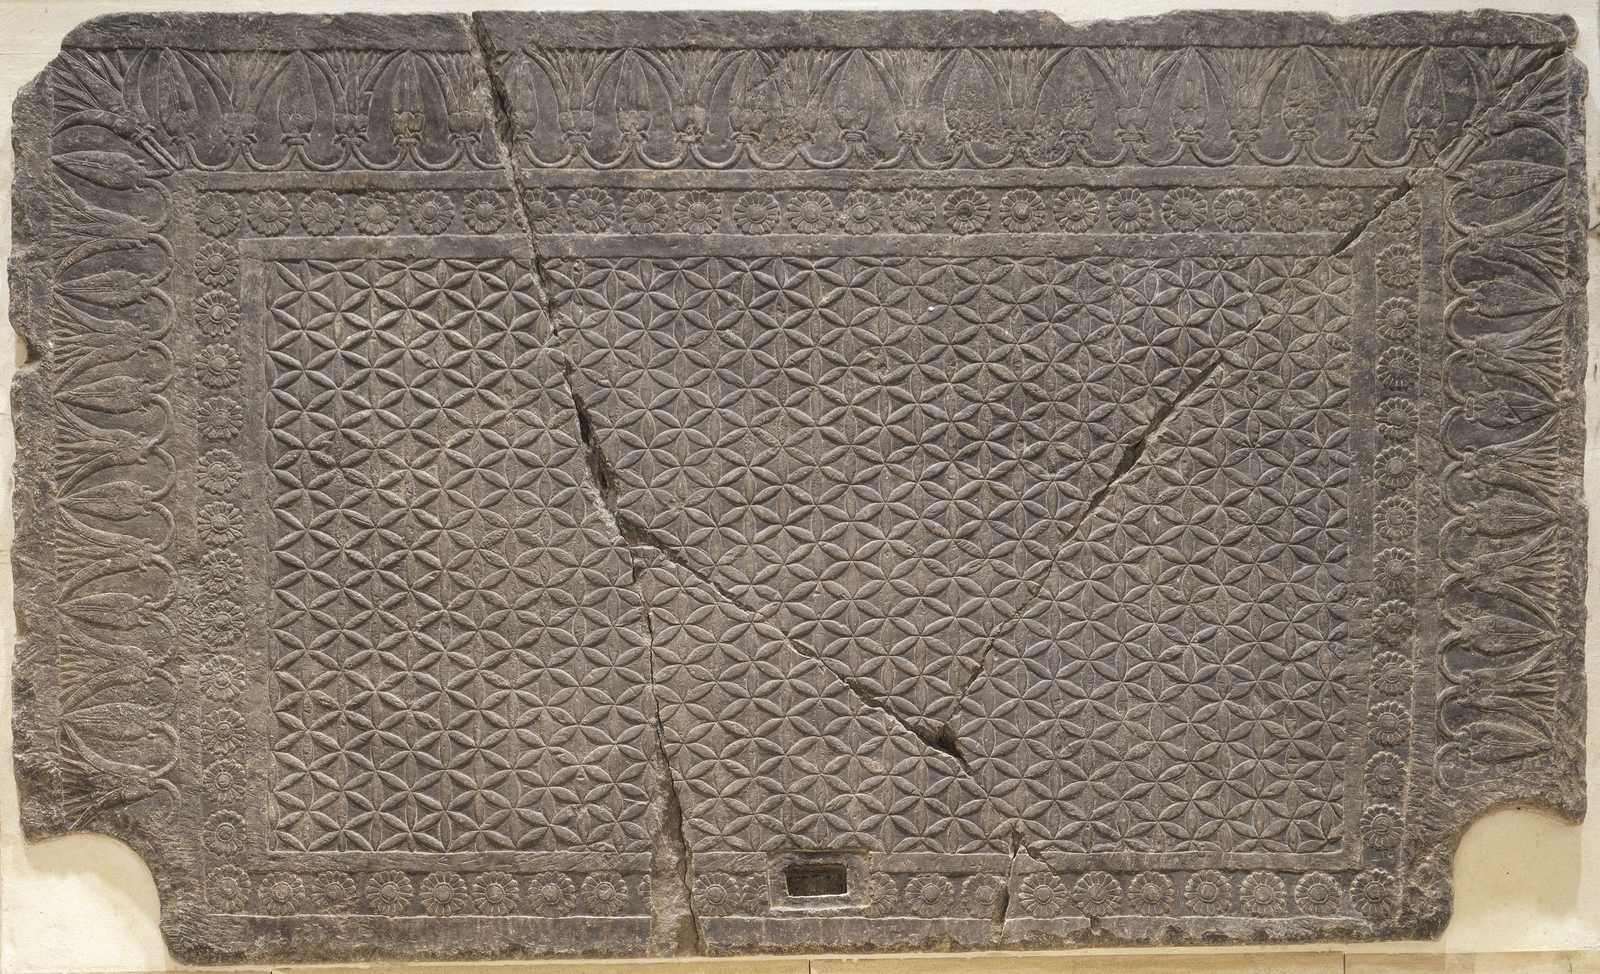 Seuil de porte trouvé à Ninive : décor de tapis